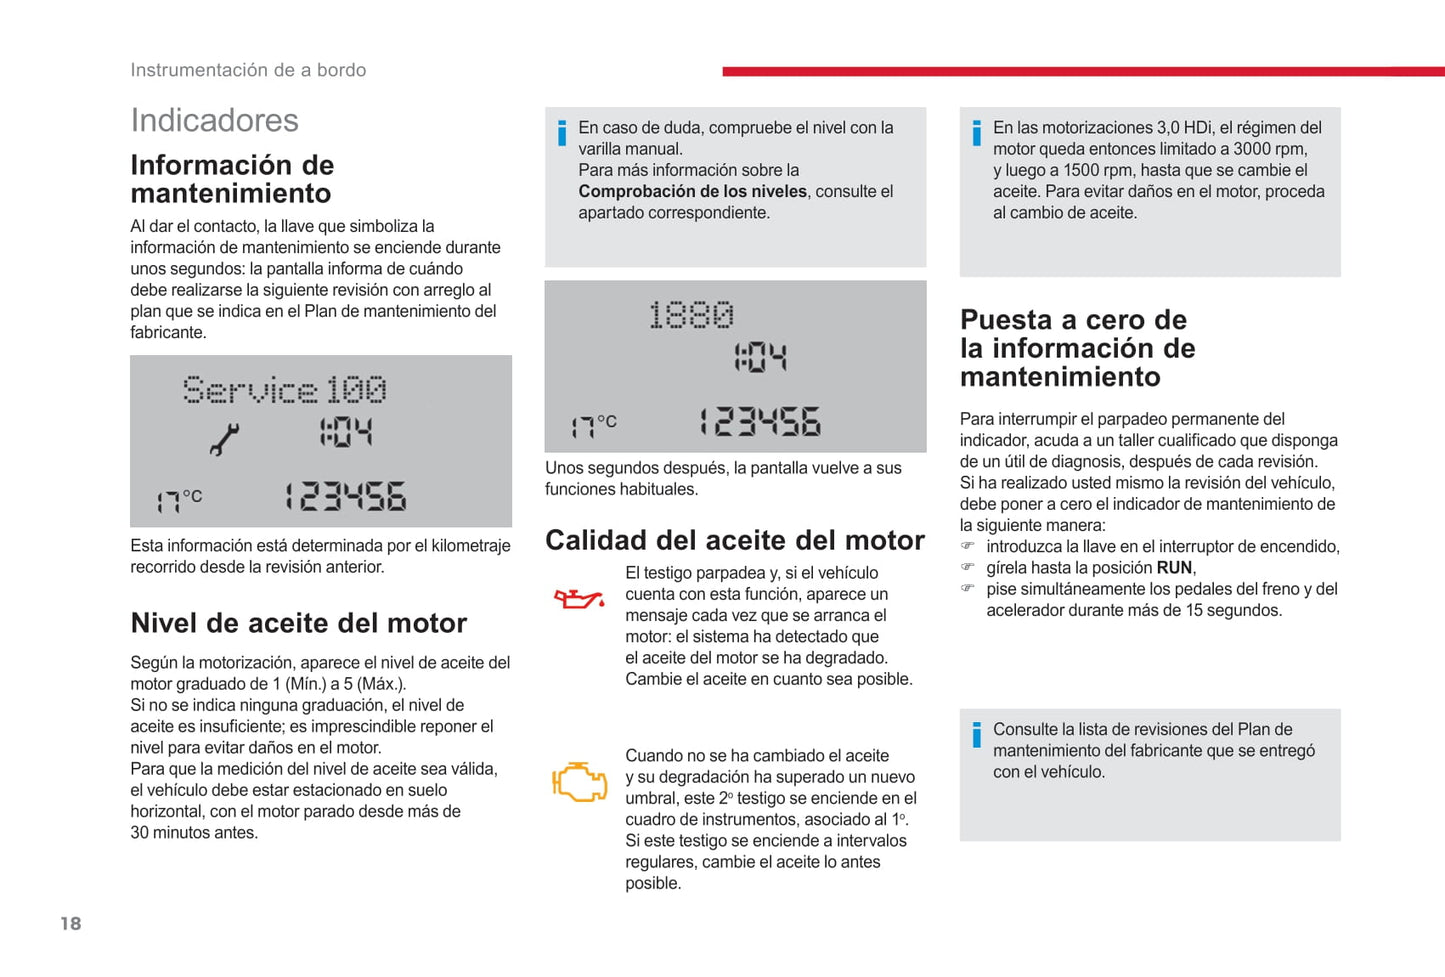 2017-2019 Citroën Jumper/Relay Gebruikershandleiding | Spaans